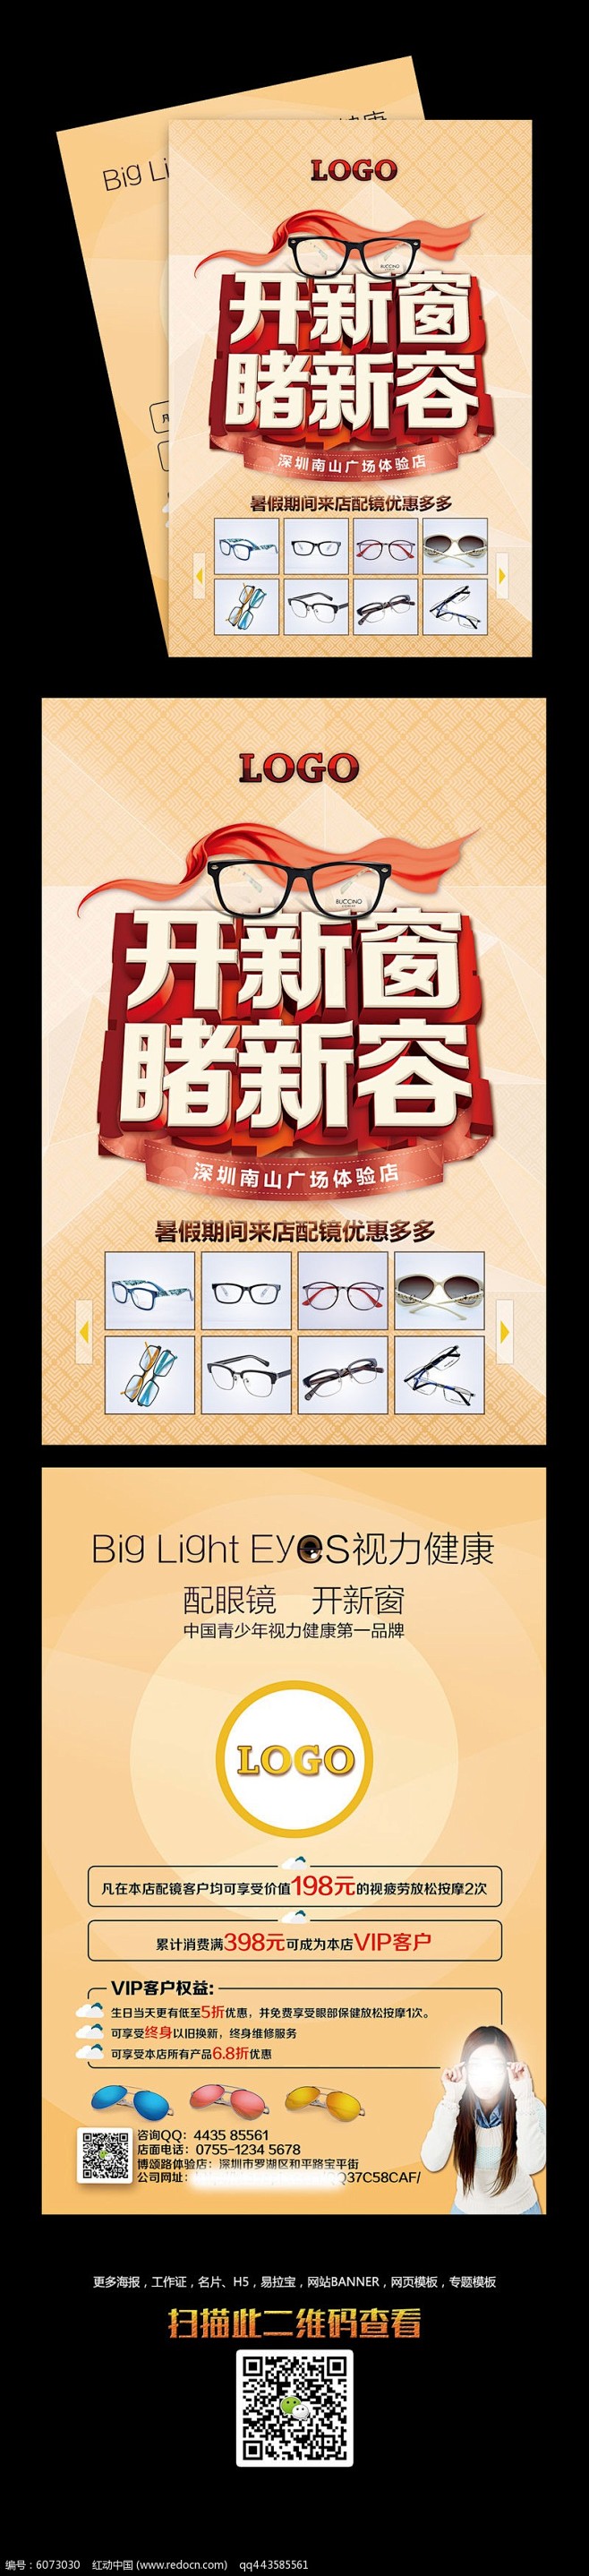 眼镜店宣传单设计PSD素材下载_宣传单|...